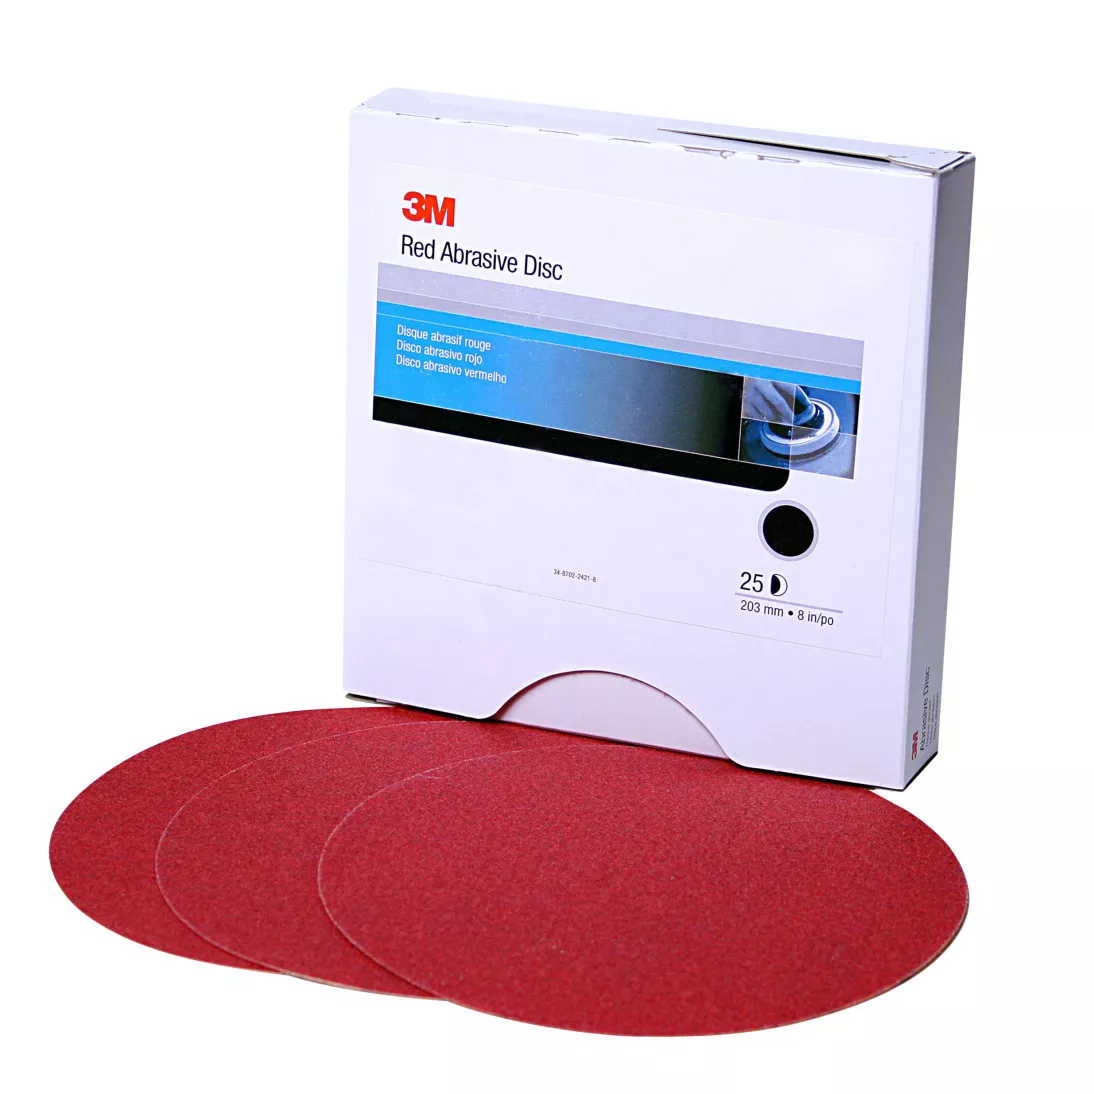 3M™ Red Abrasive Stikit™ Disc, 01113, 6 in, P150 grade, 100 discs per
roll, 6 rolls per case